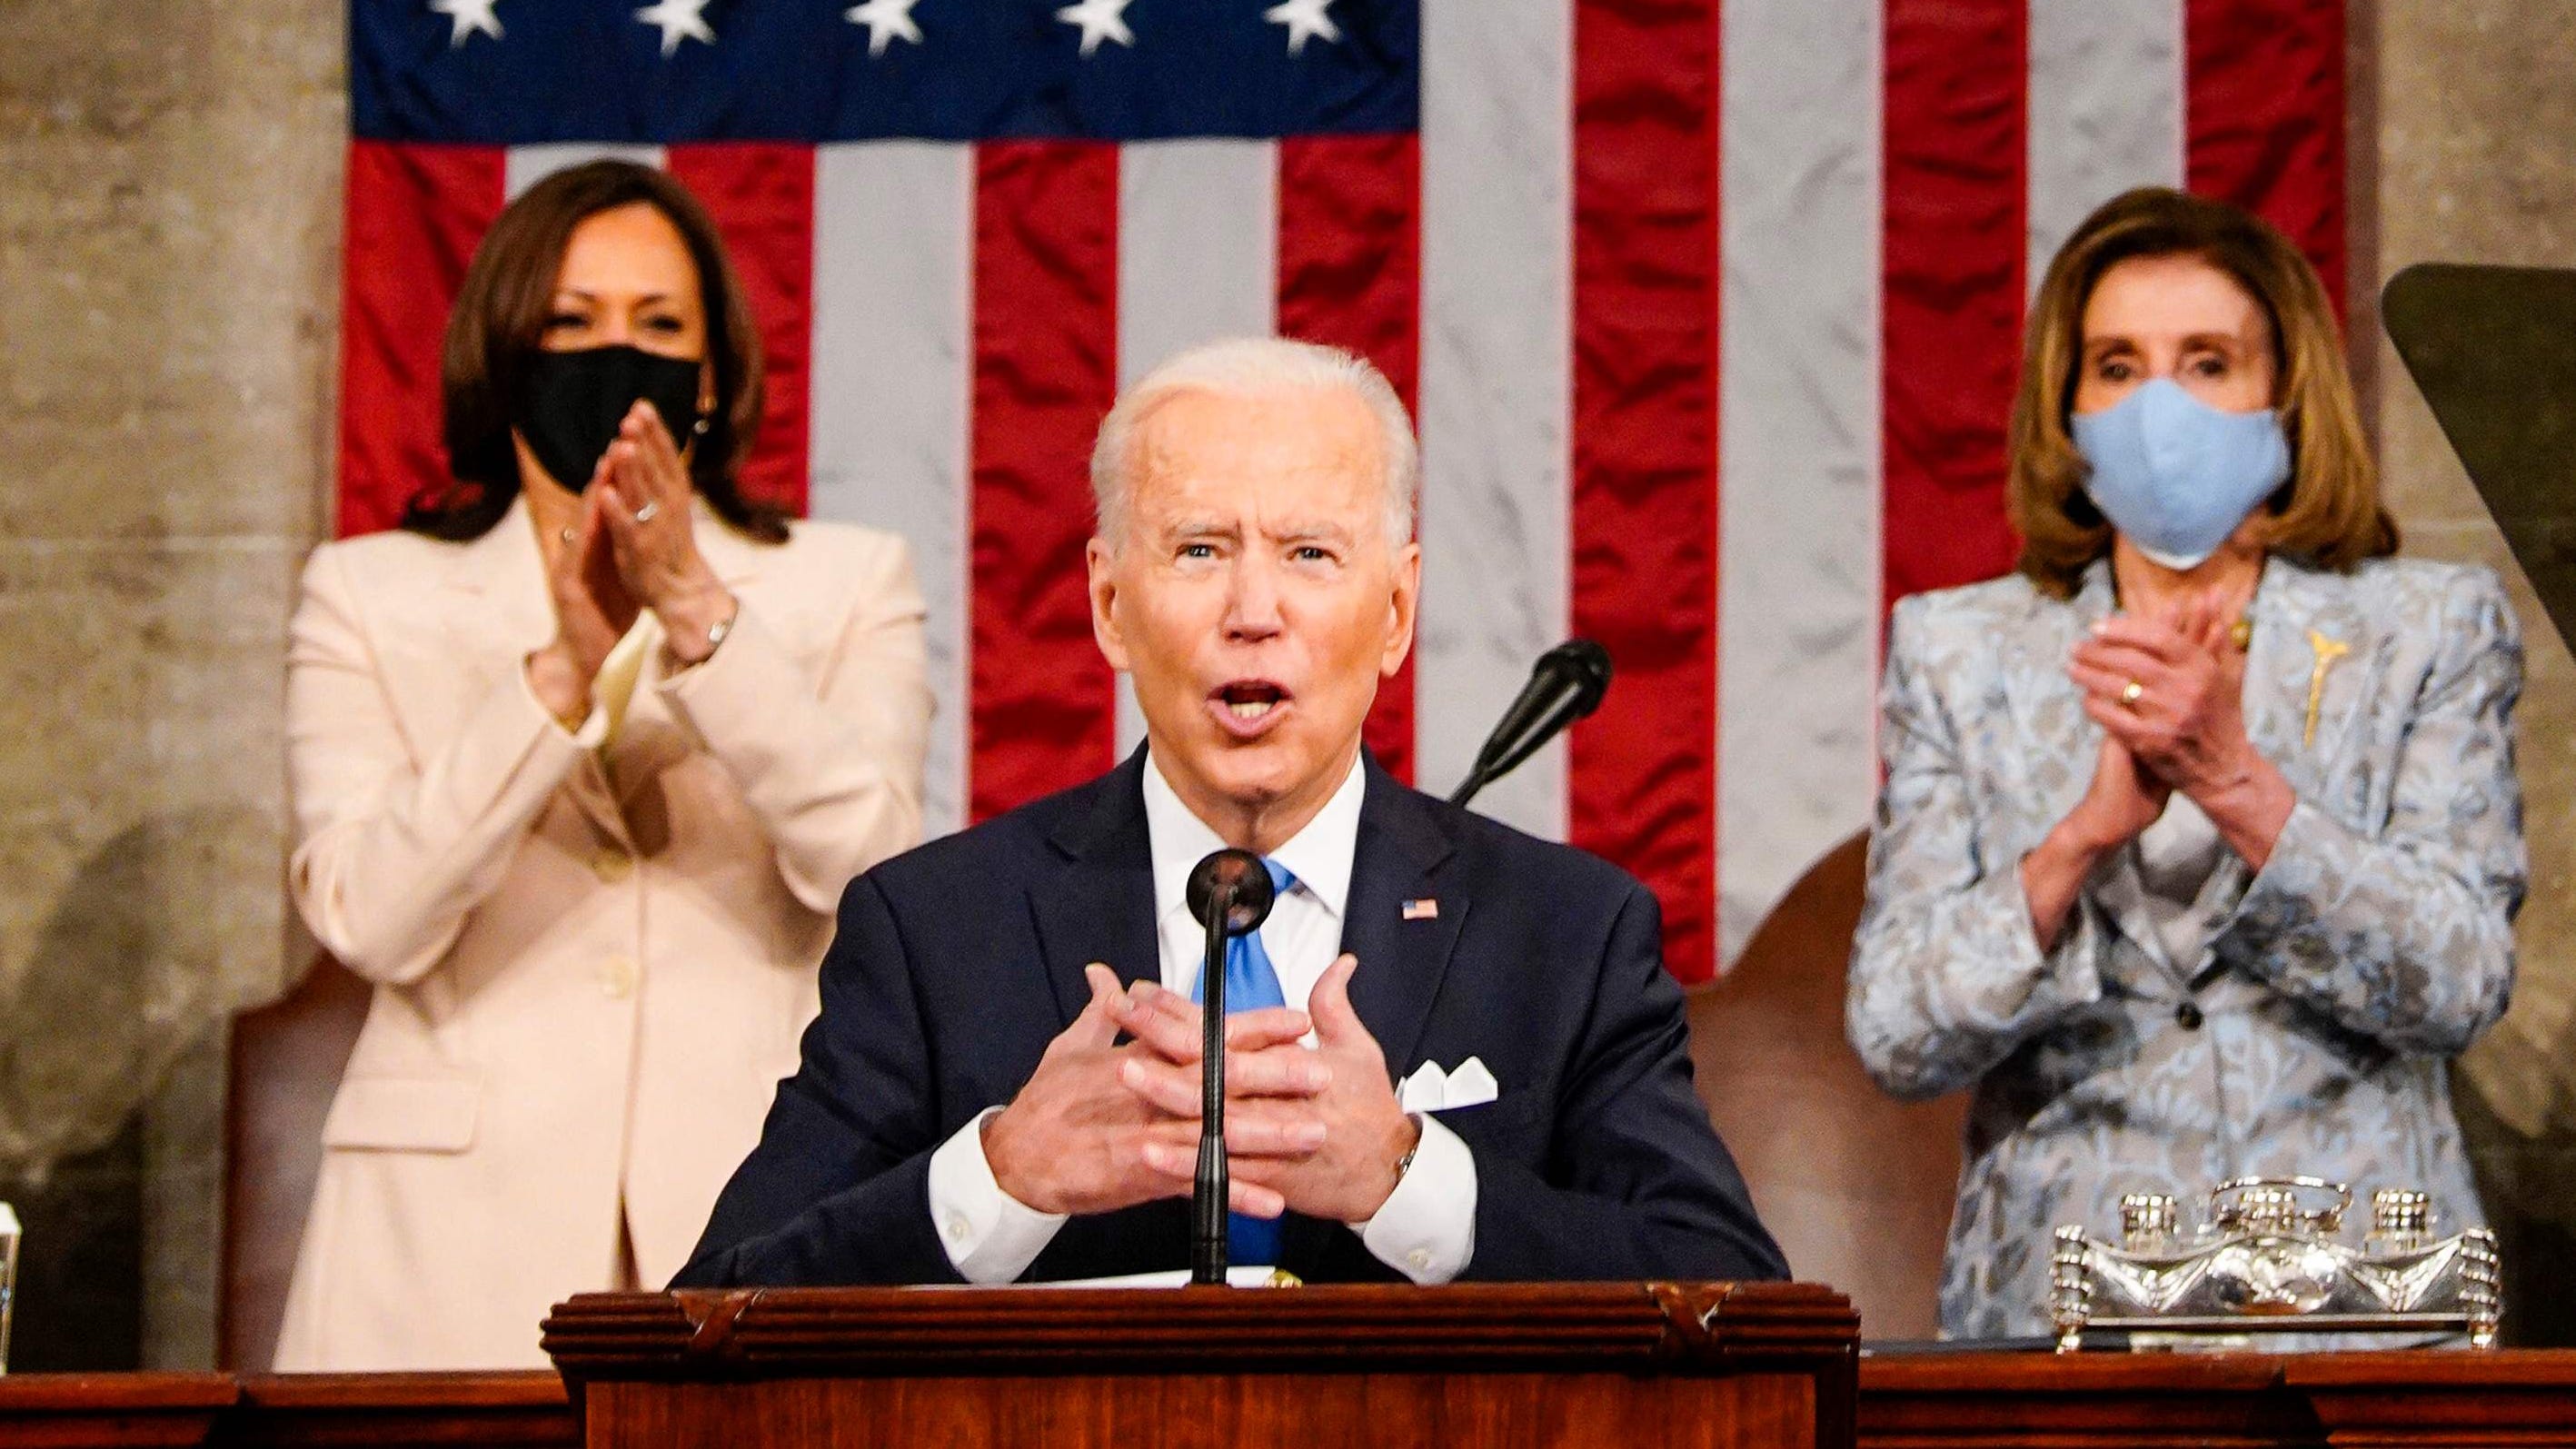 Biden speech: How Indiana's congressional leaders reacted